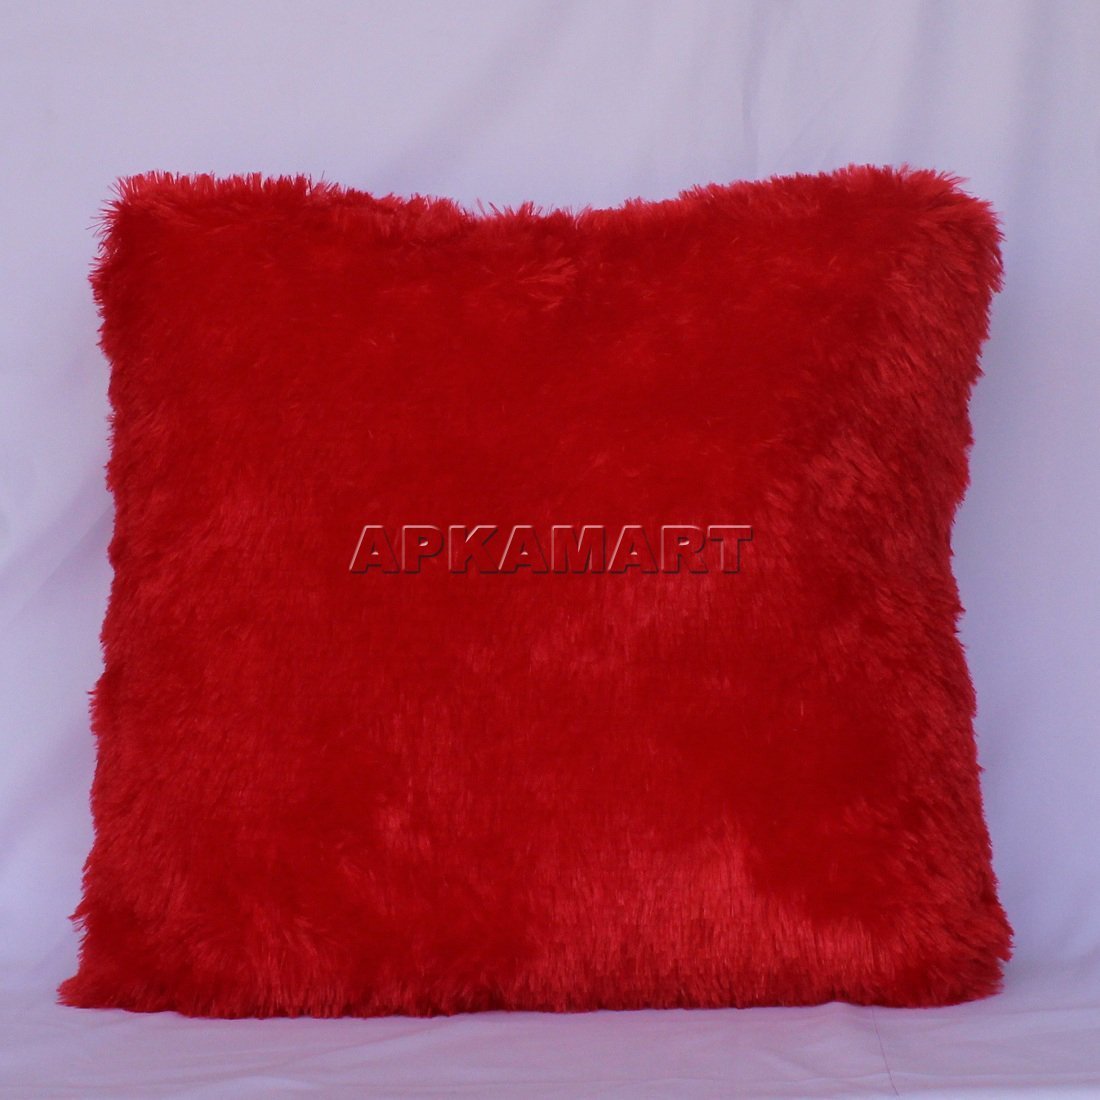 Red Pillow Soft Toy - ApkaMart